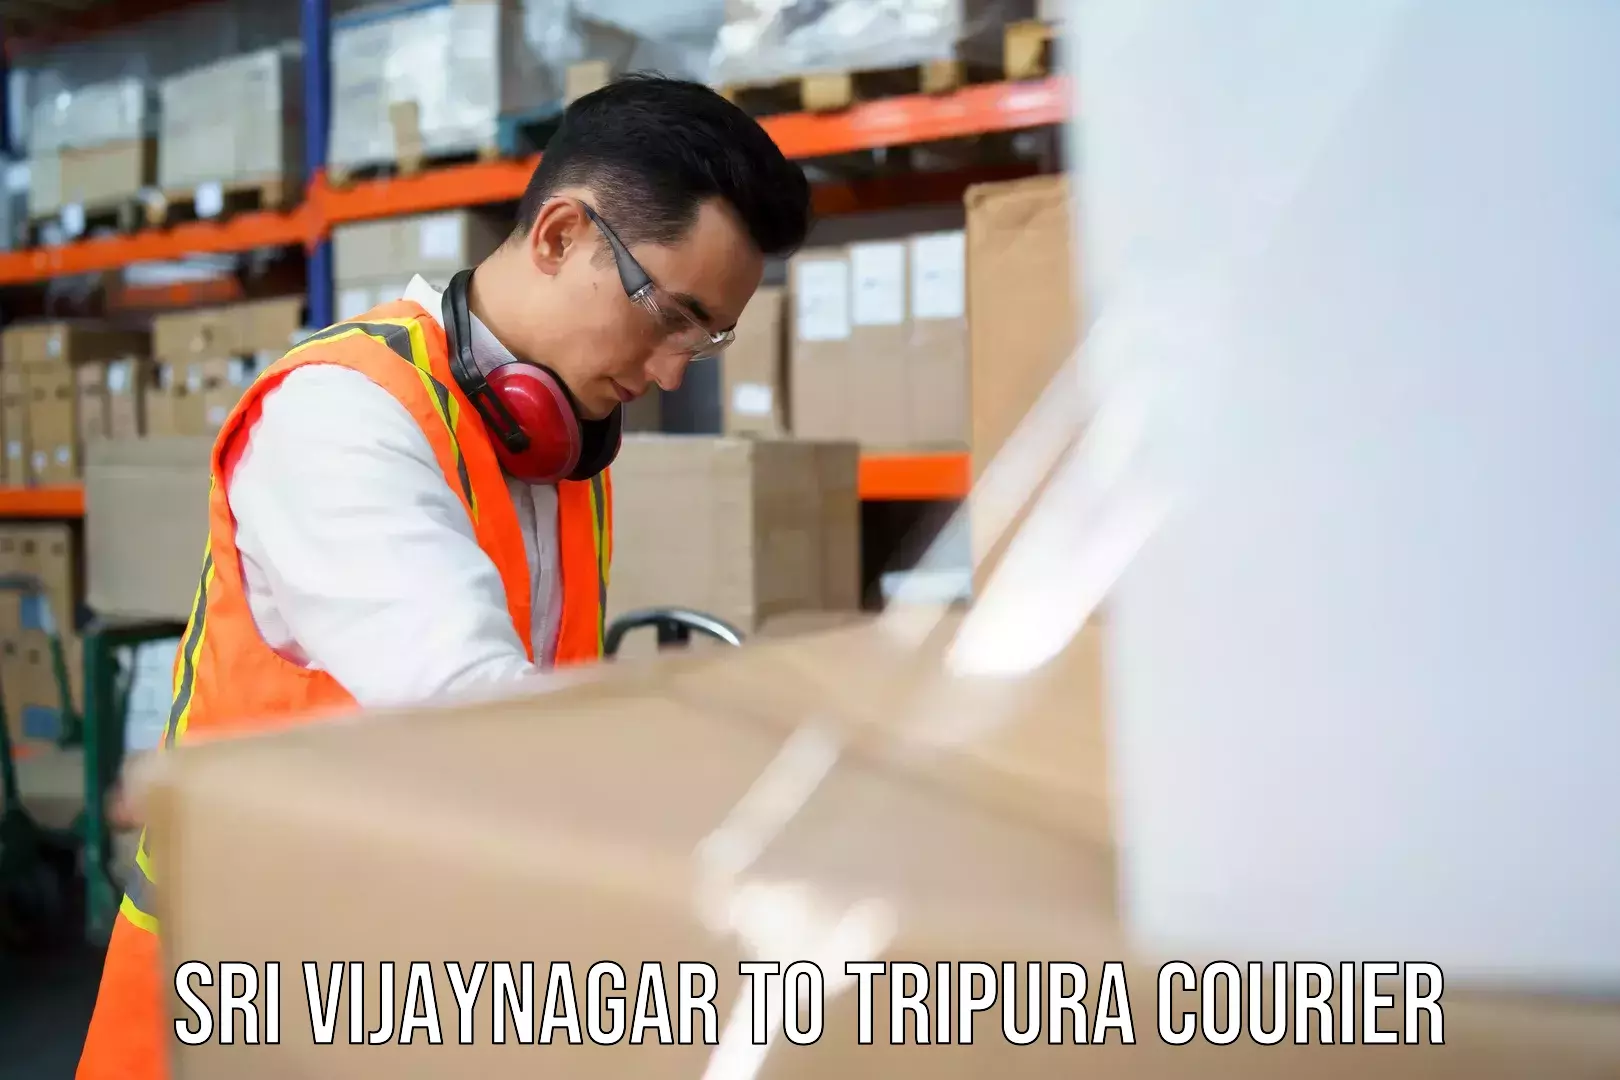 Efficient parcel service Sri Vijaynagar to Tripura